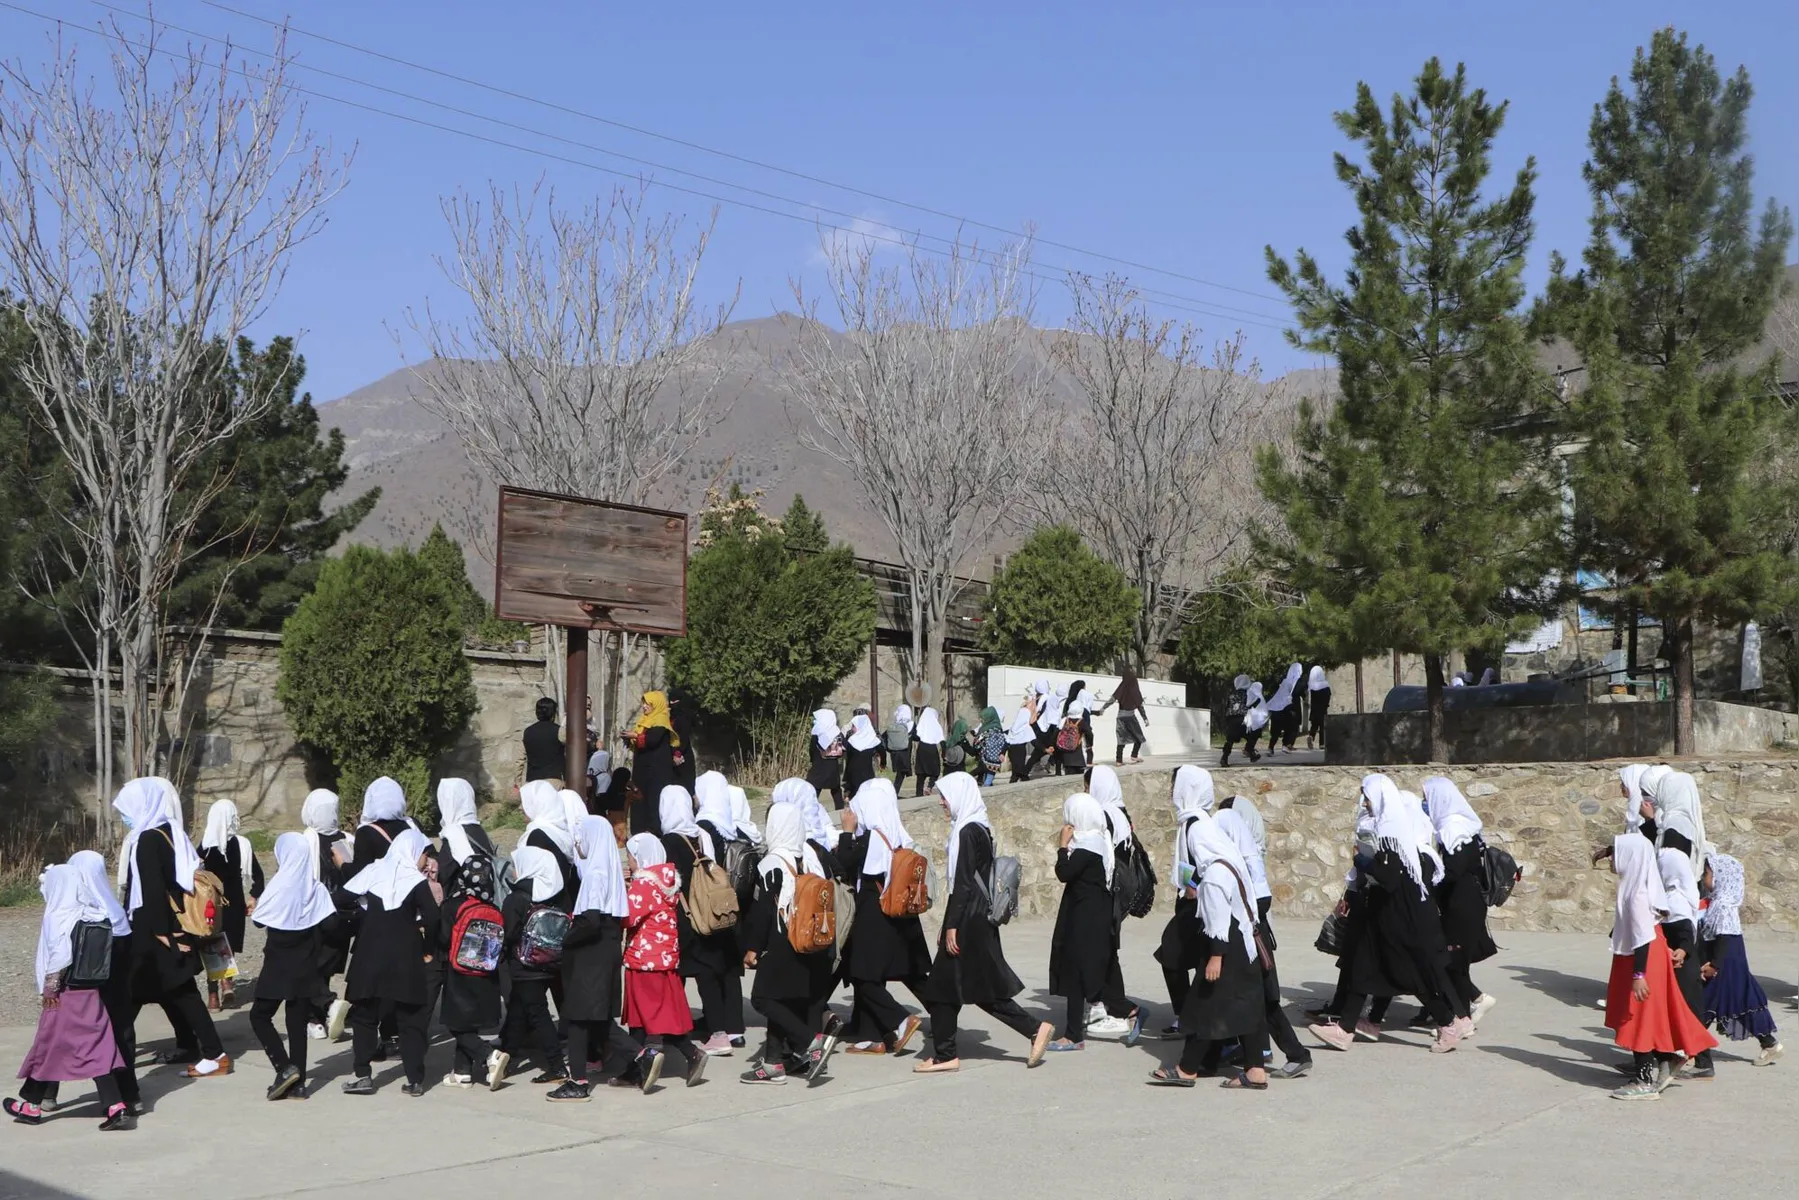 Imagem ilustrativa da imagem 'O que fizemos de errado?', perguntam afegãs proibidas de ir à escola